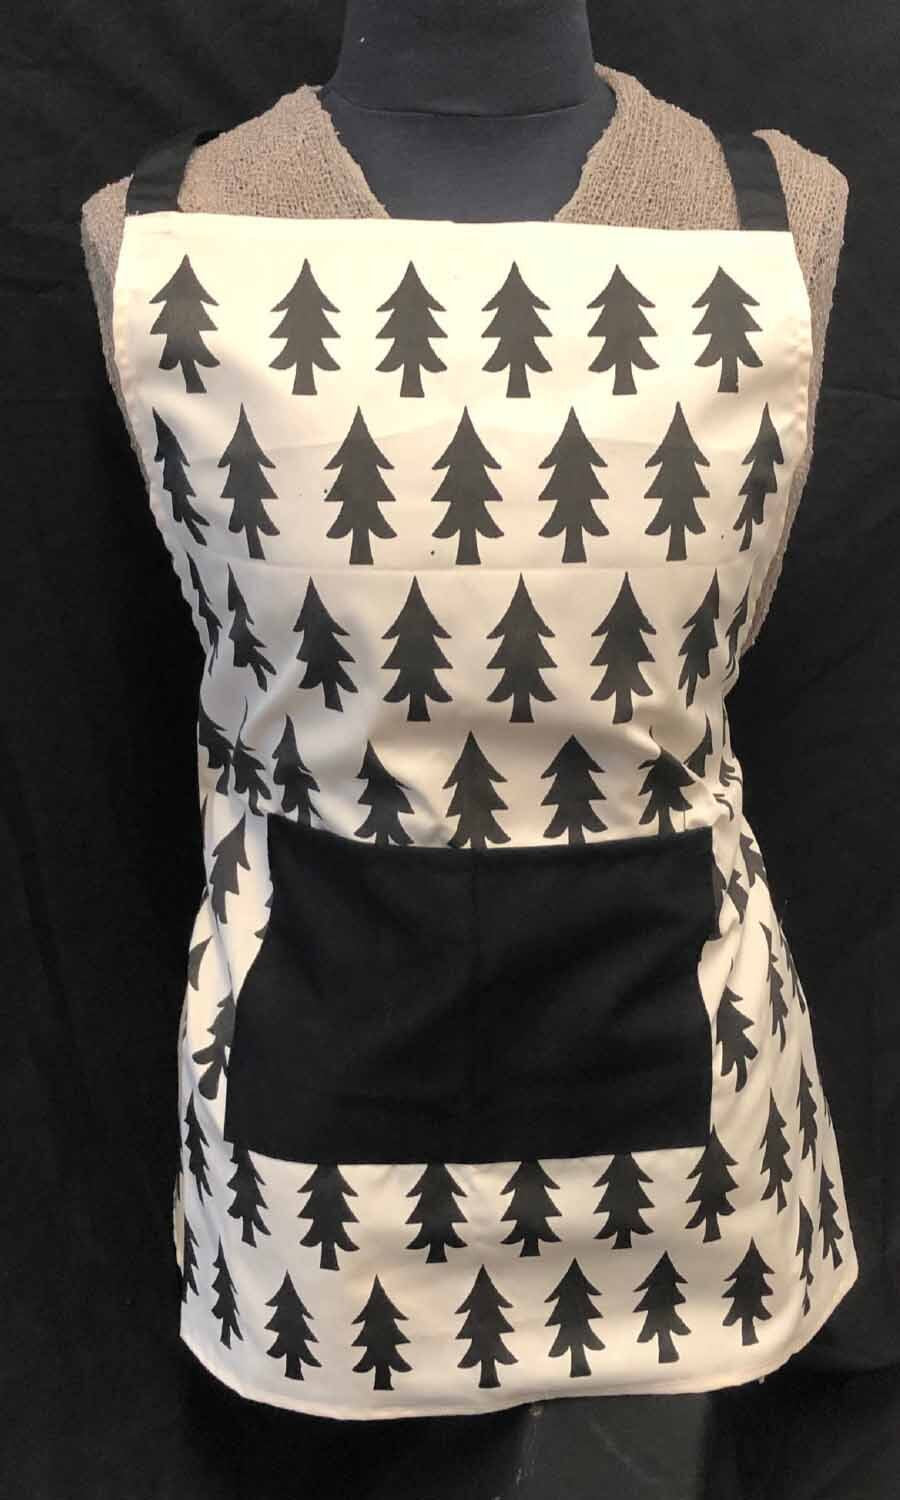 apron - trees - w/ pocket - white/black